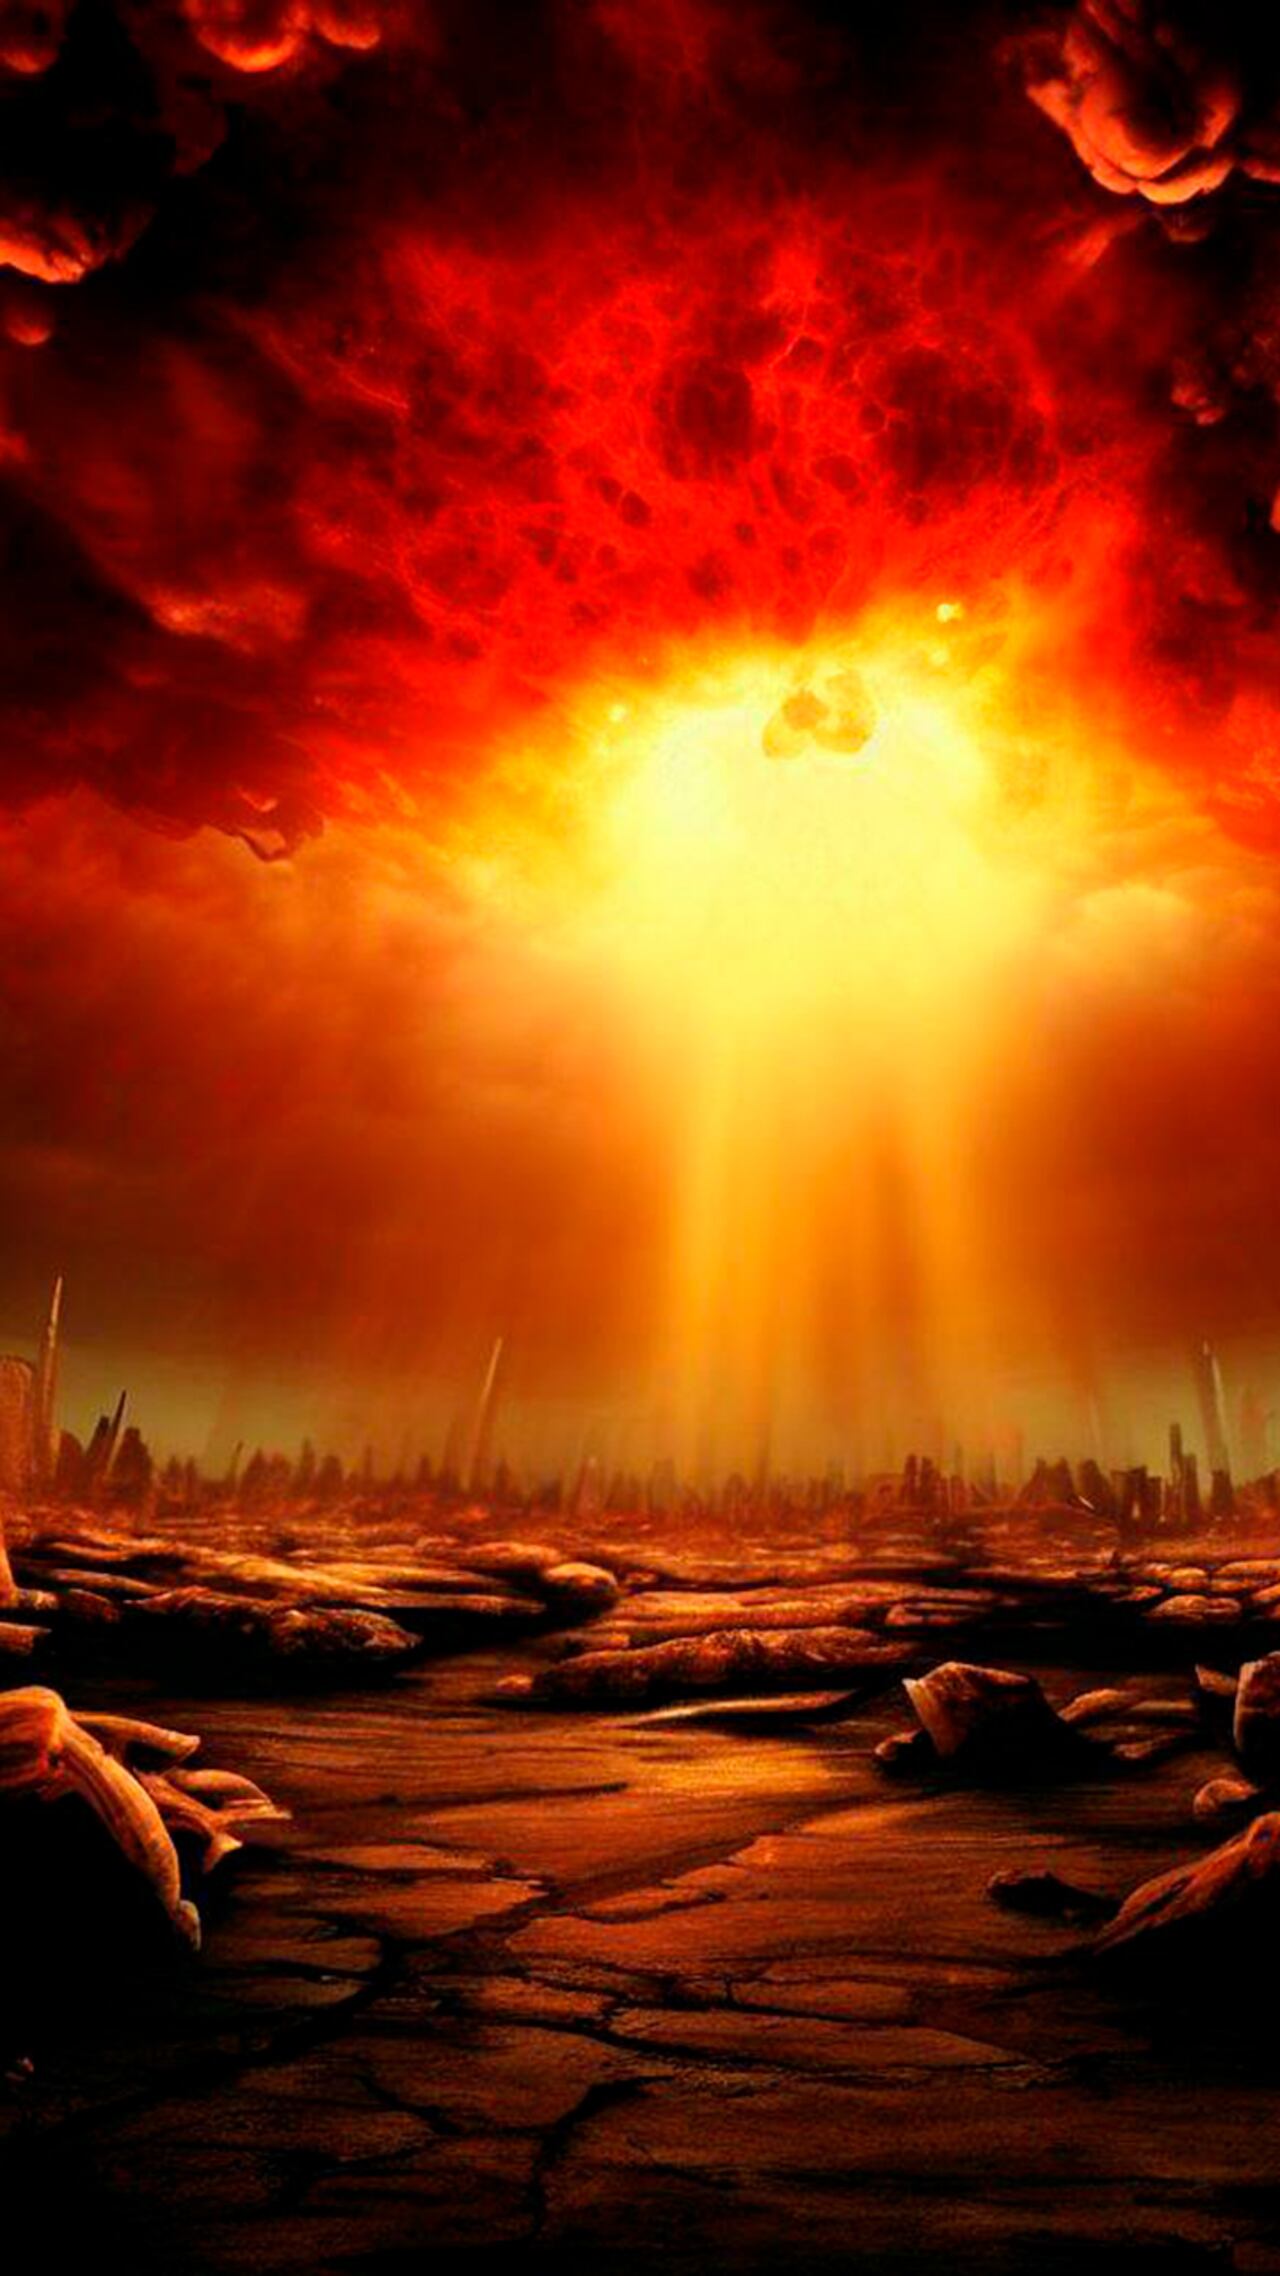 Ilustración sobre el fin del mundo según el Apocalipsis.